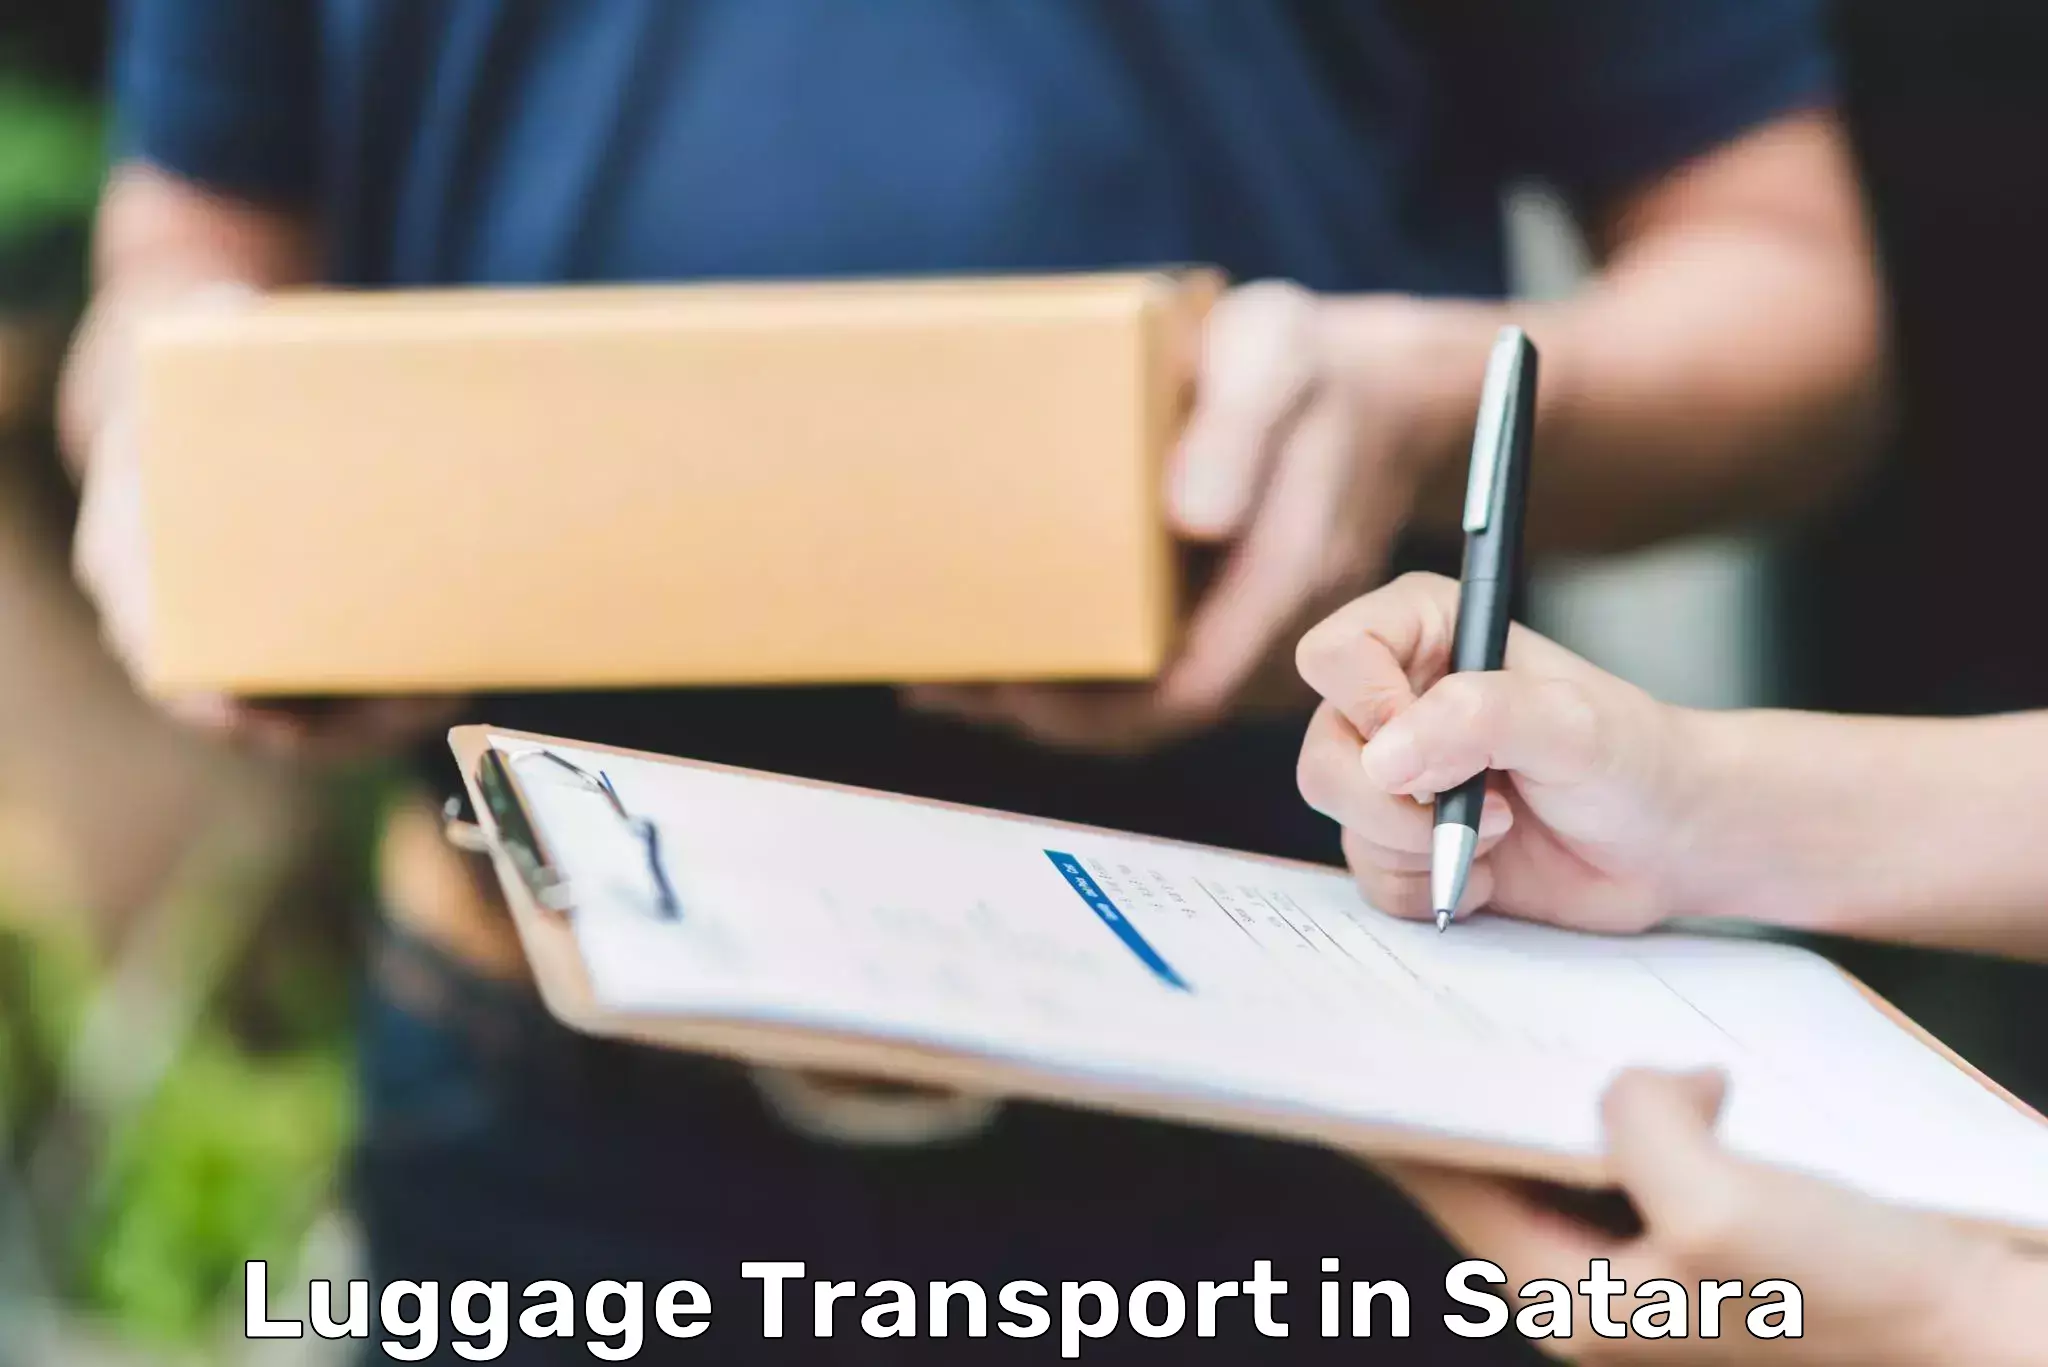 Urban luggage shipping in Satara